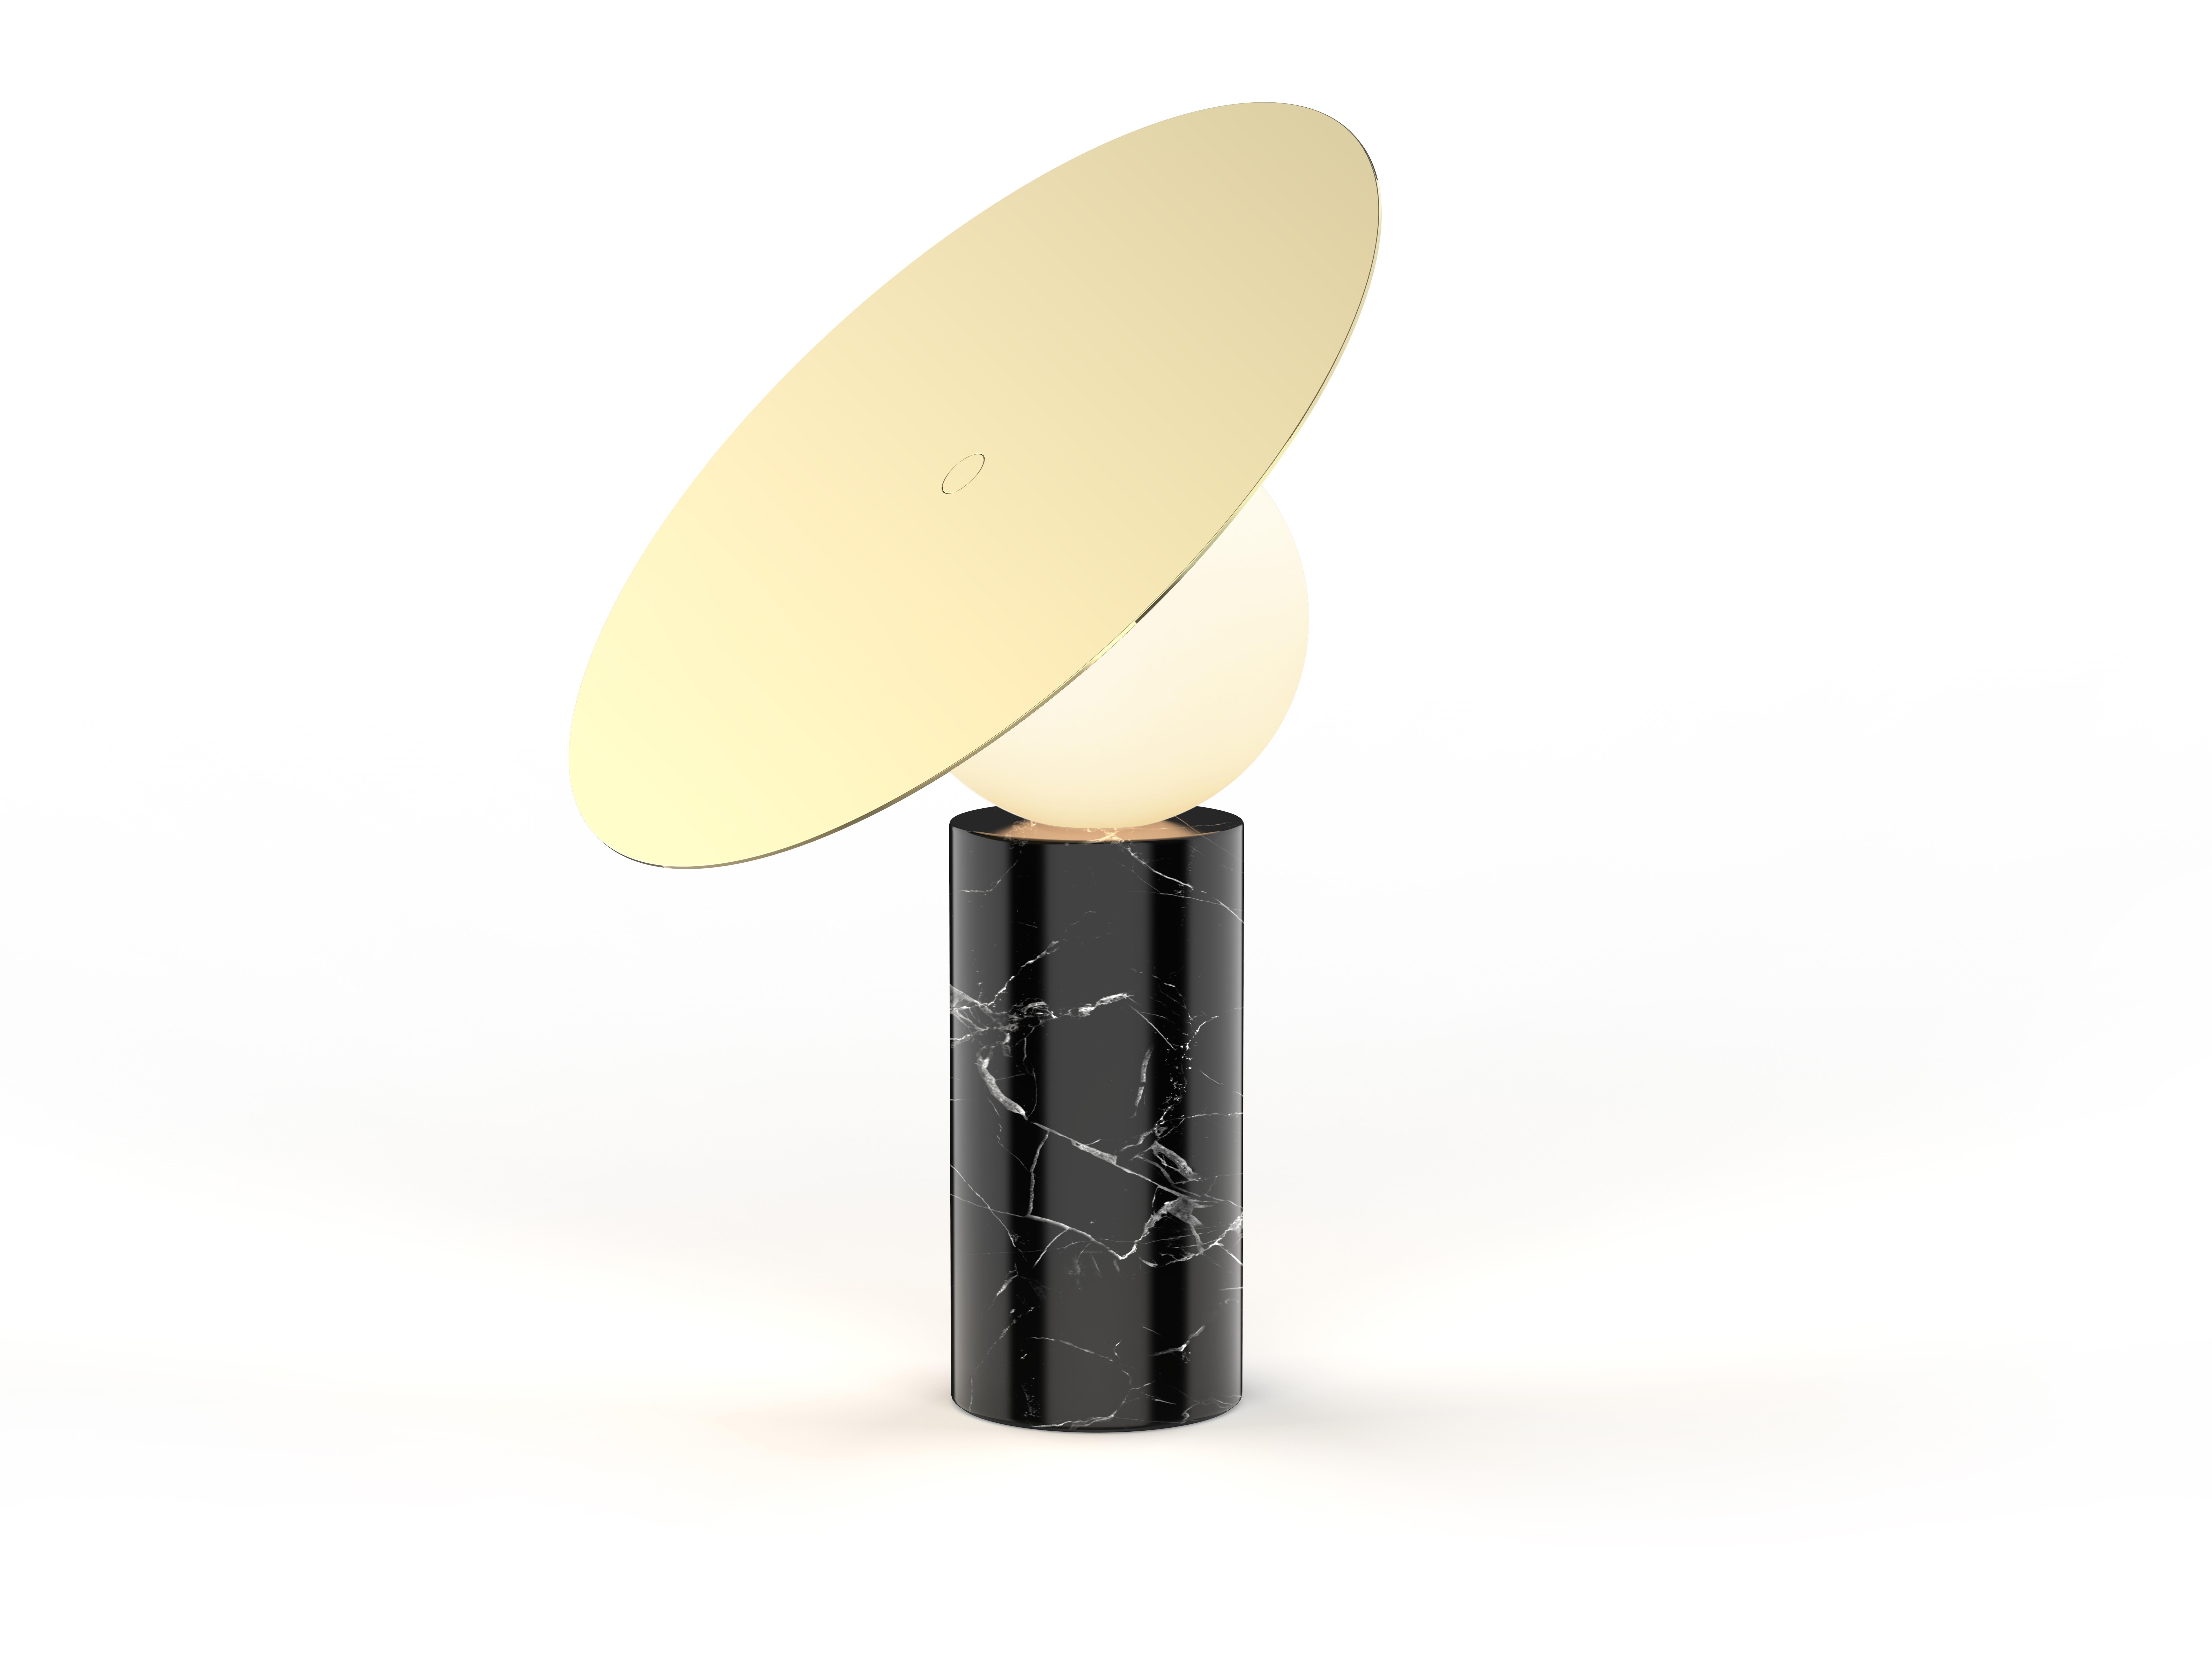 La silhouette iconique de la table disque Bola est définie par son élégant abat-jour en acier inoxydable chromé positionné à 45 degrés et surélevé par un diffuseur à globe en verre opalin qui semble flotter au-dessus de sa base cylindrique en